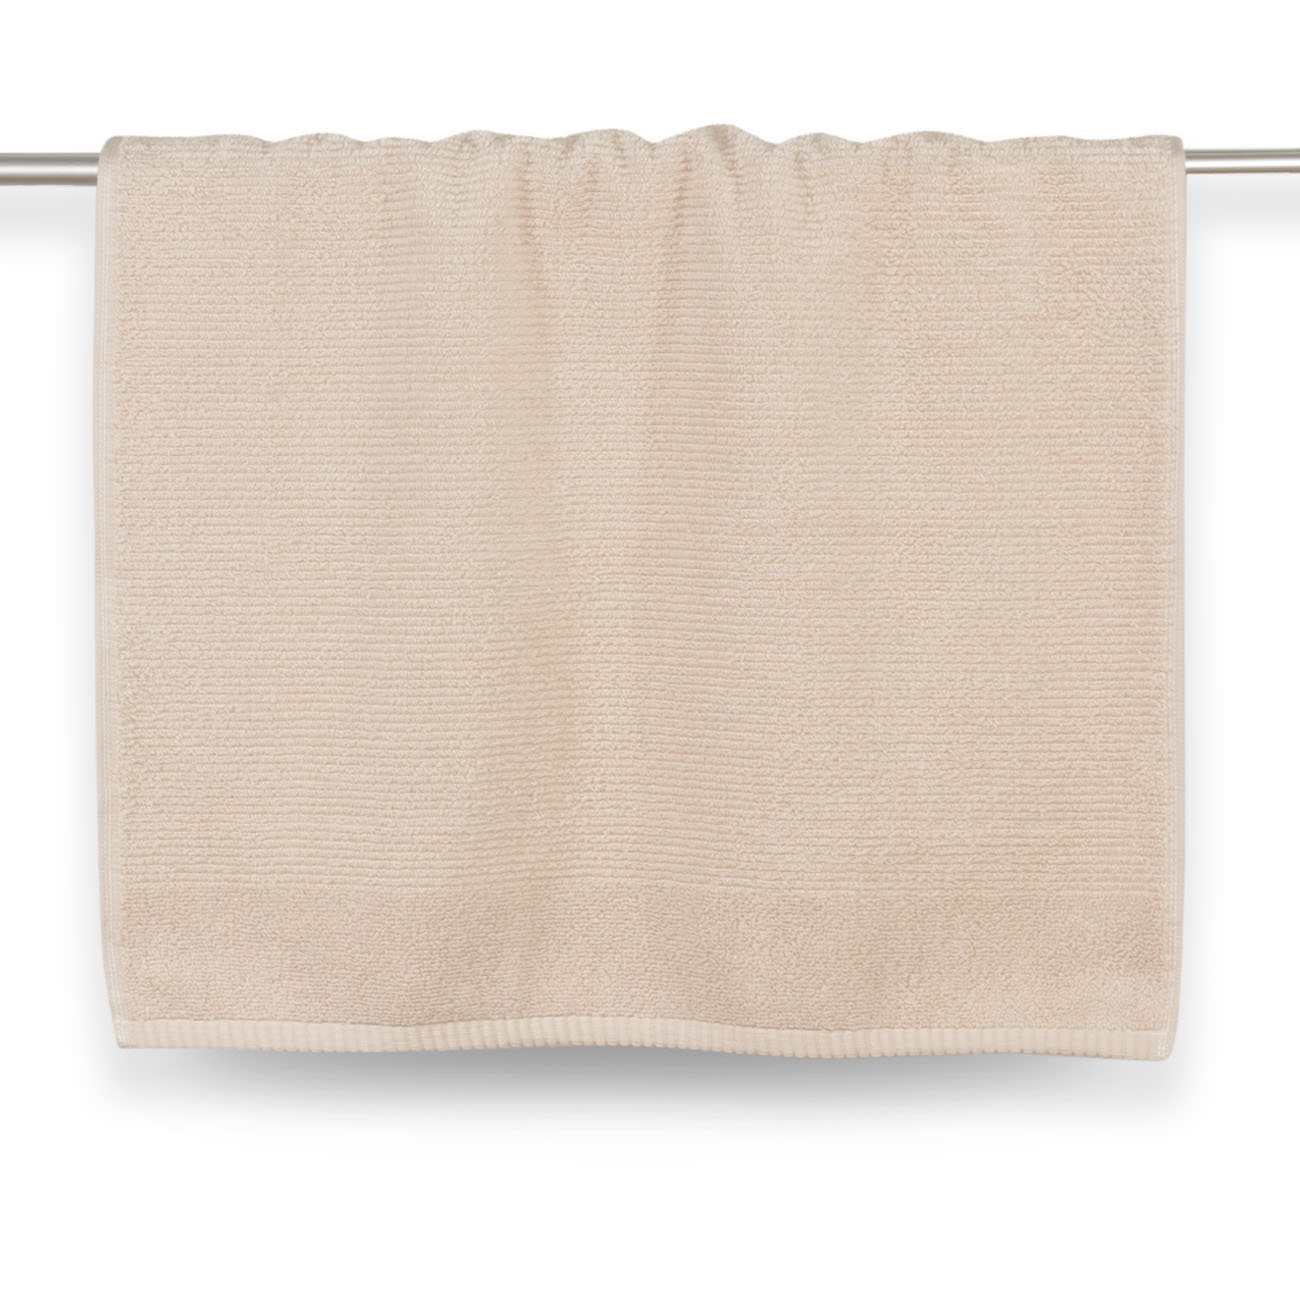 Towel, 50x90 cm, cotton, beige, Terry cotton изображение № 2